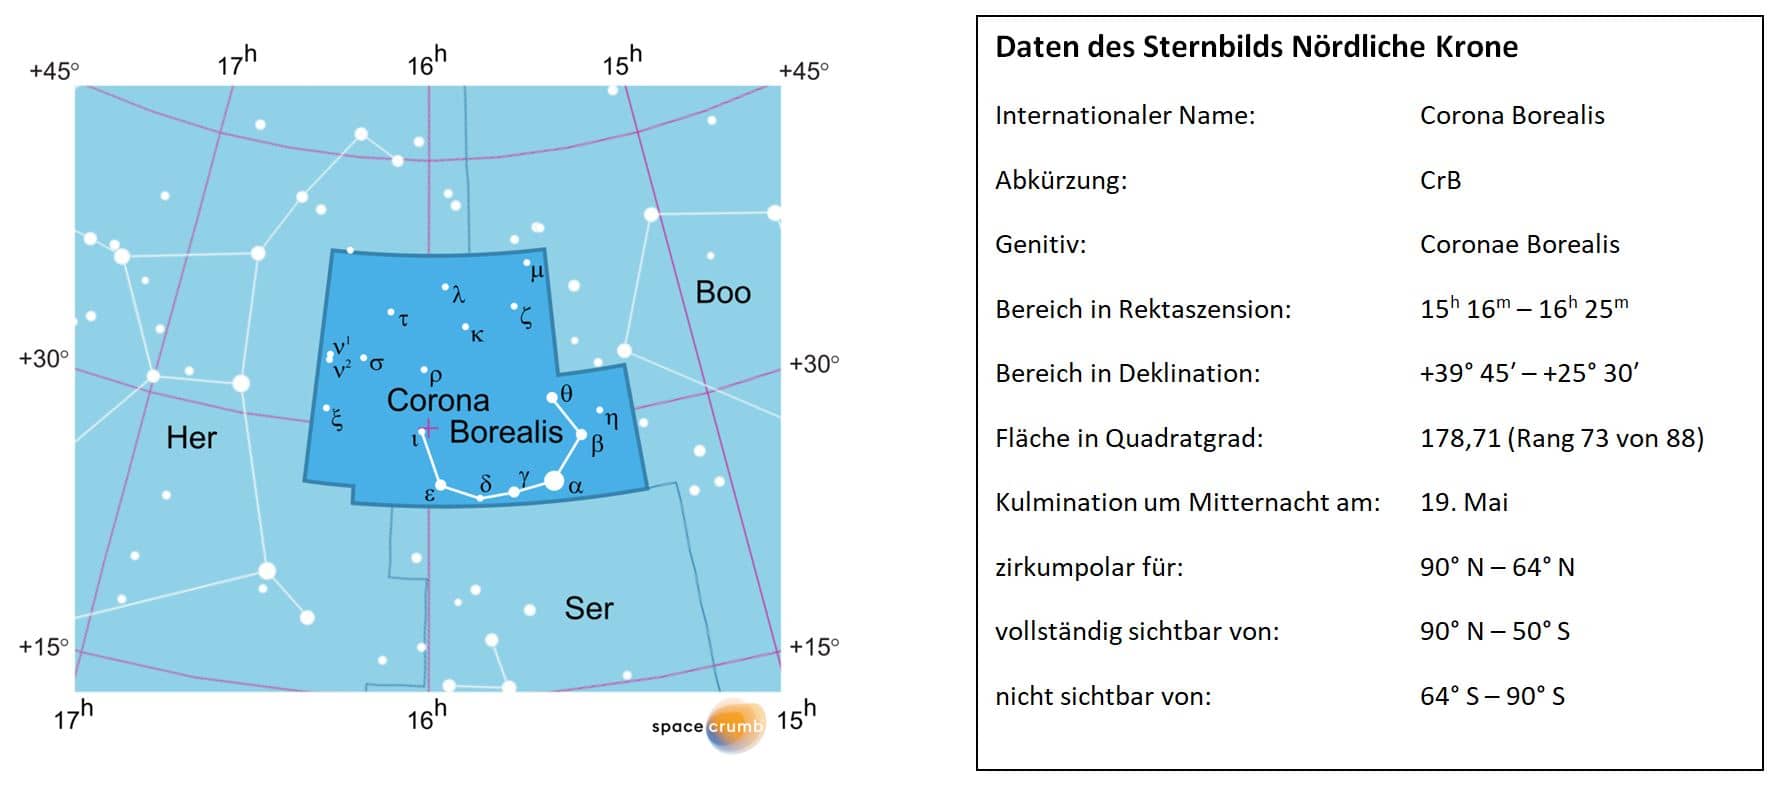 Links zeigt eine mit Koordinaten versehene Karte eines Himmelsausschnitts weiße Sterne auf hellblauem Hintergrund. Die Fläche, die das Sternbild Nördliche Krone einnimmt, ist dunkelblau hervorgehoben. Eine Tabelle rechts gibt wichtige Daten des Sternbilds an.